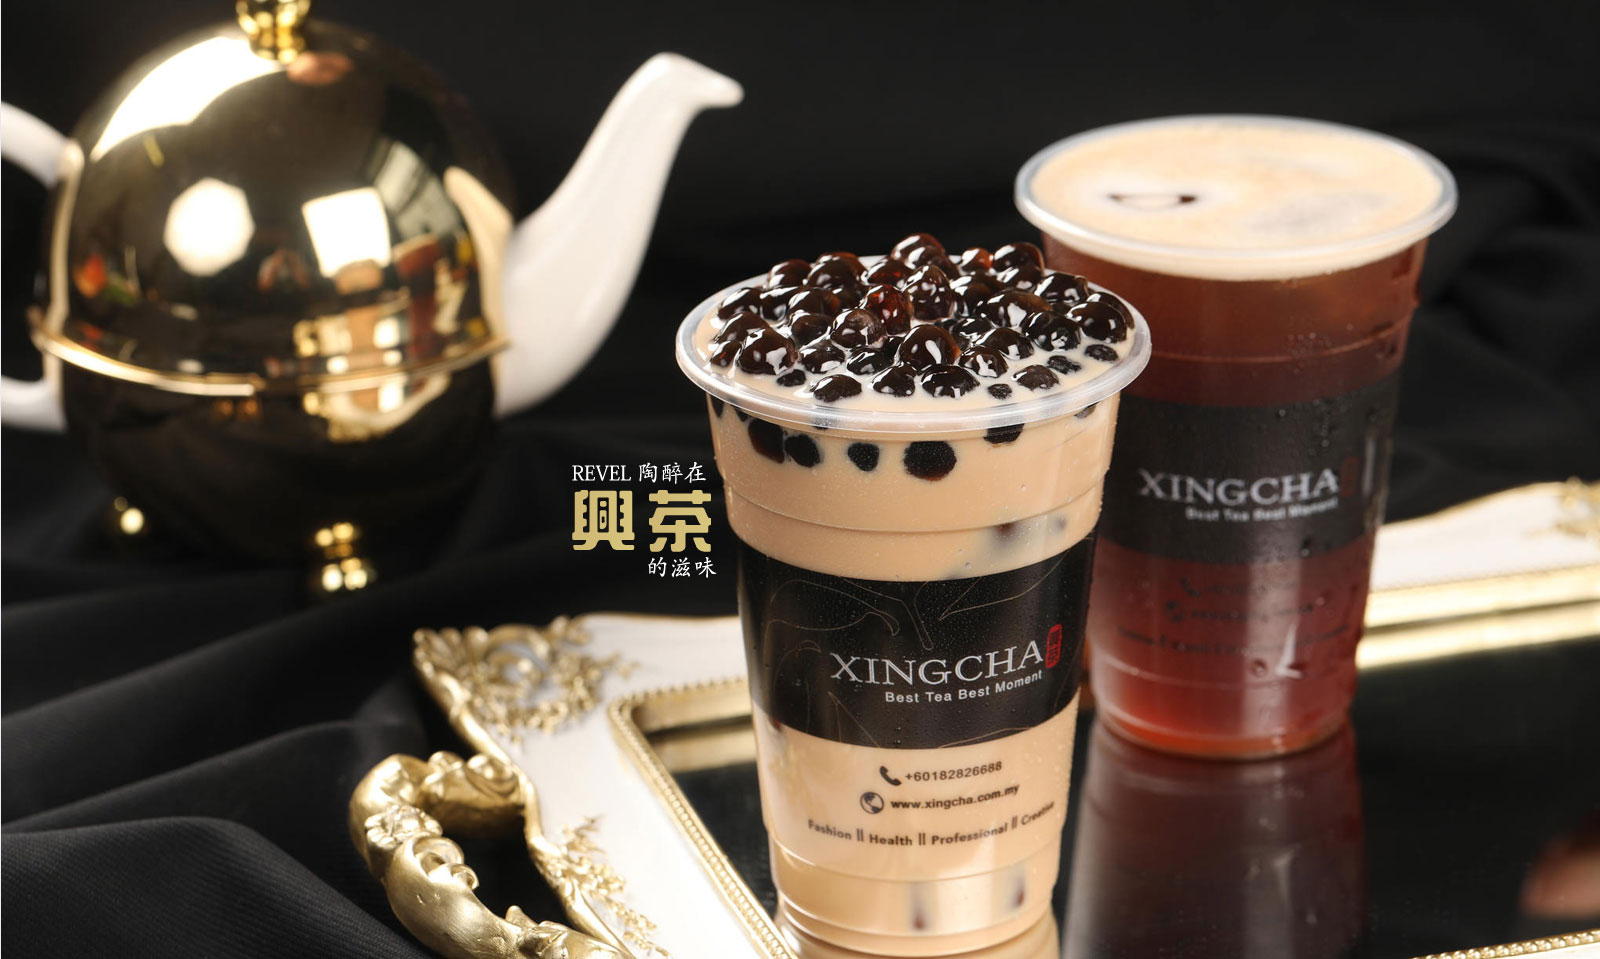 興茶时尚茶飮集团 | Xing Cha Bubble Tea | Bubble Tea Franchise | Pearl Milk Tea Franchising